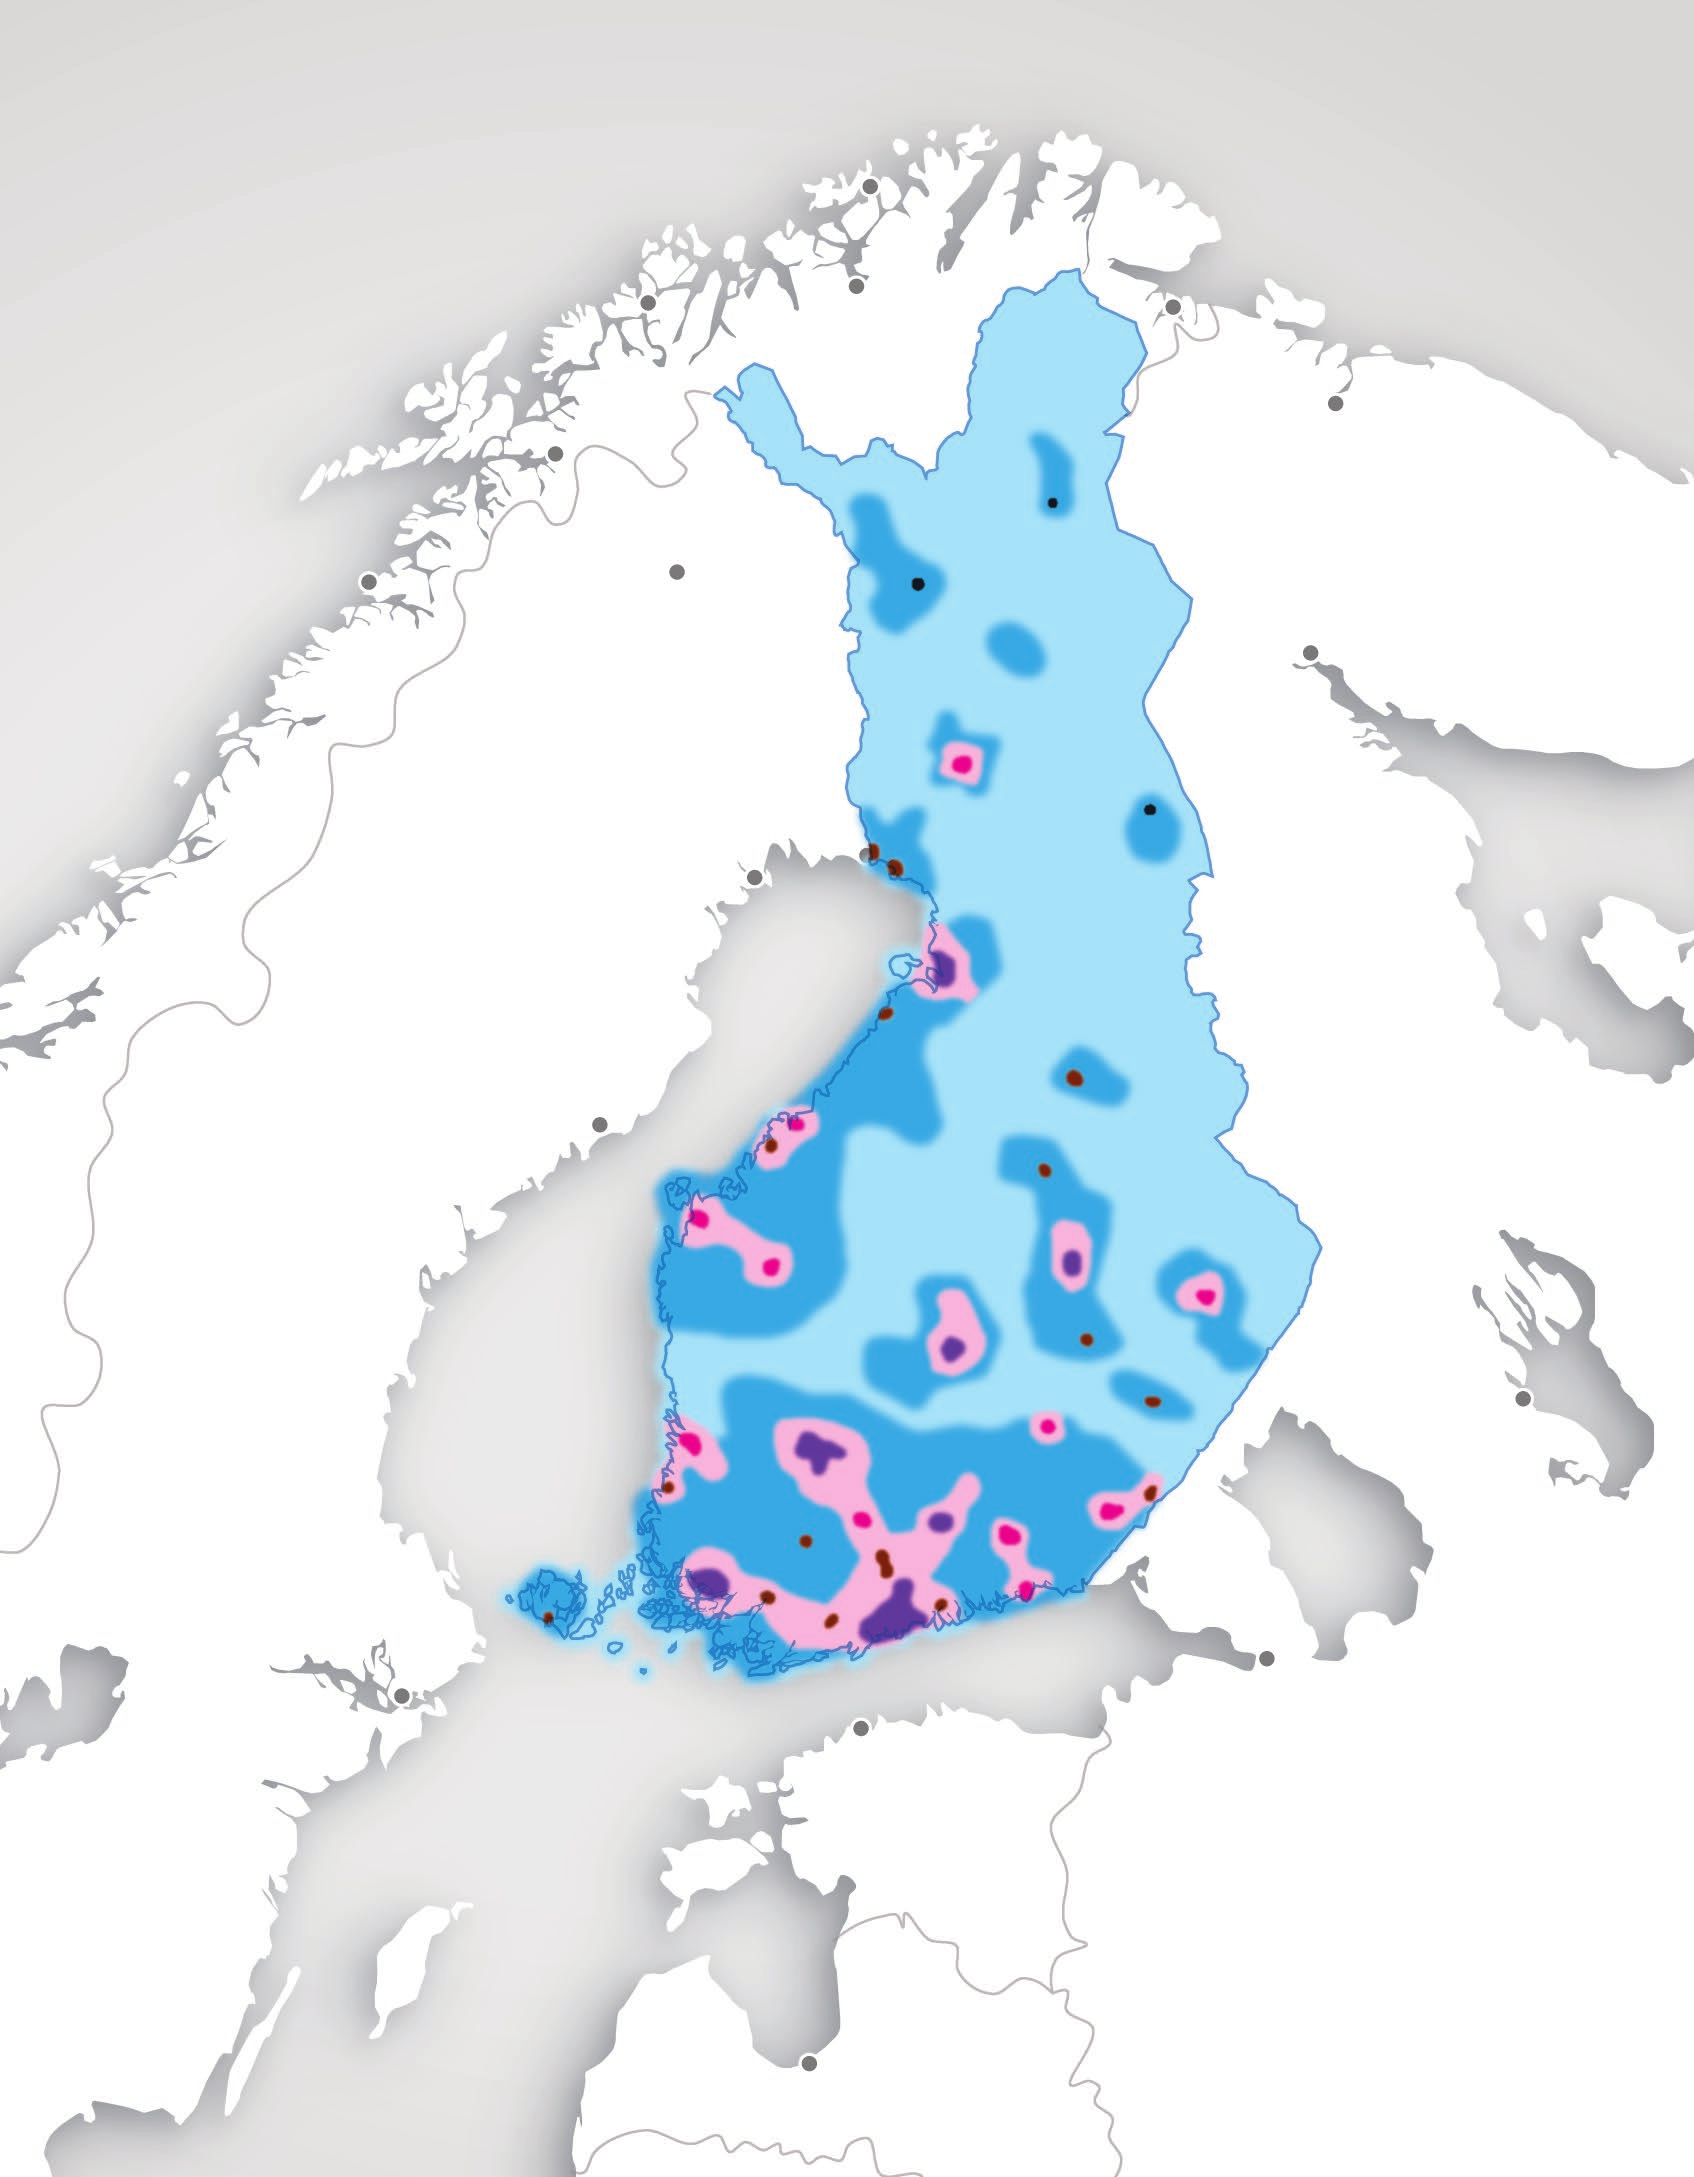 Kuva 14. Suomen monikeskuksinen aluerakenne vuonna 2050 Suomen aluerakenne perustuu toimintakykyisiin keskuksiin, elinvoimaiseen maaseutuun sekä monimuotoiseen vuorovaikutukseen.